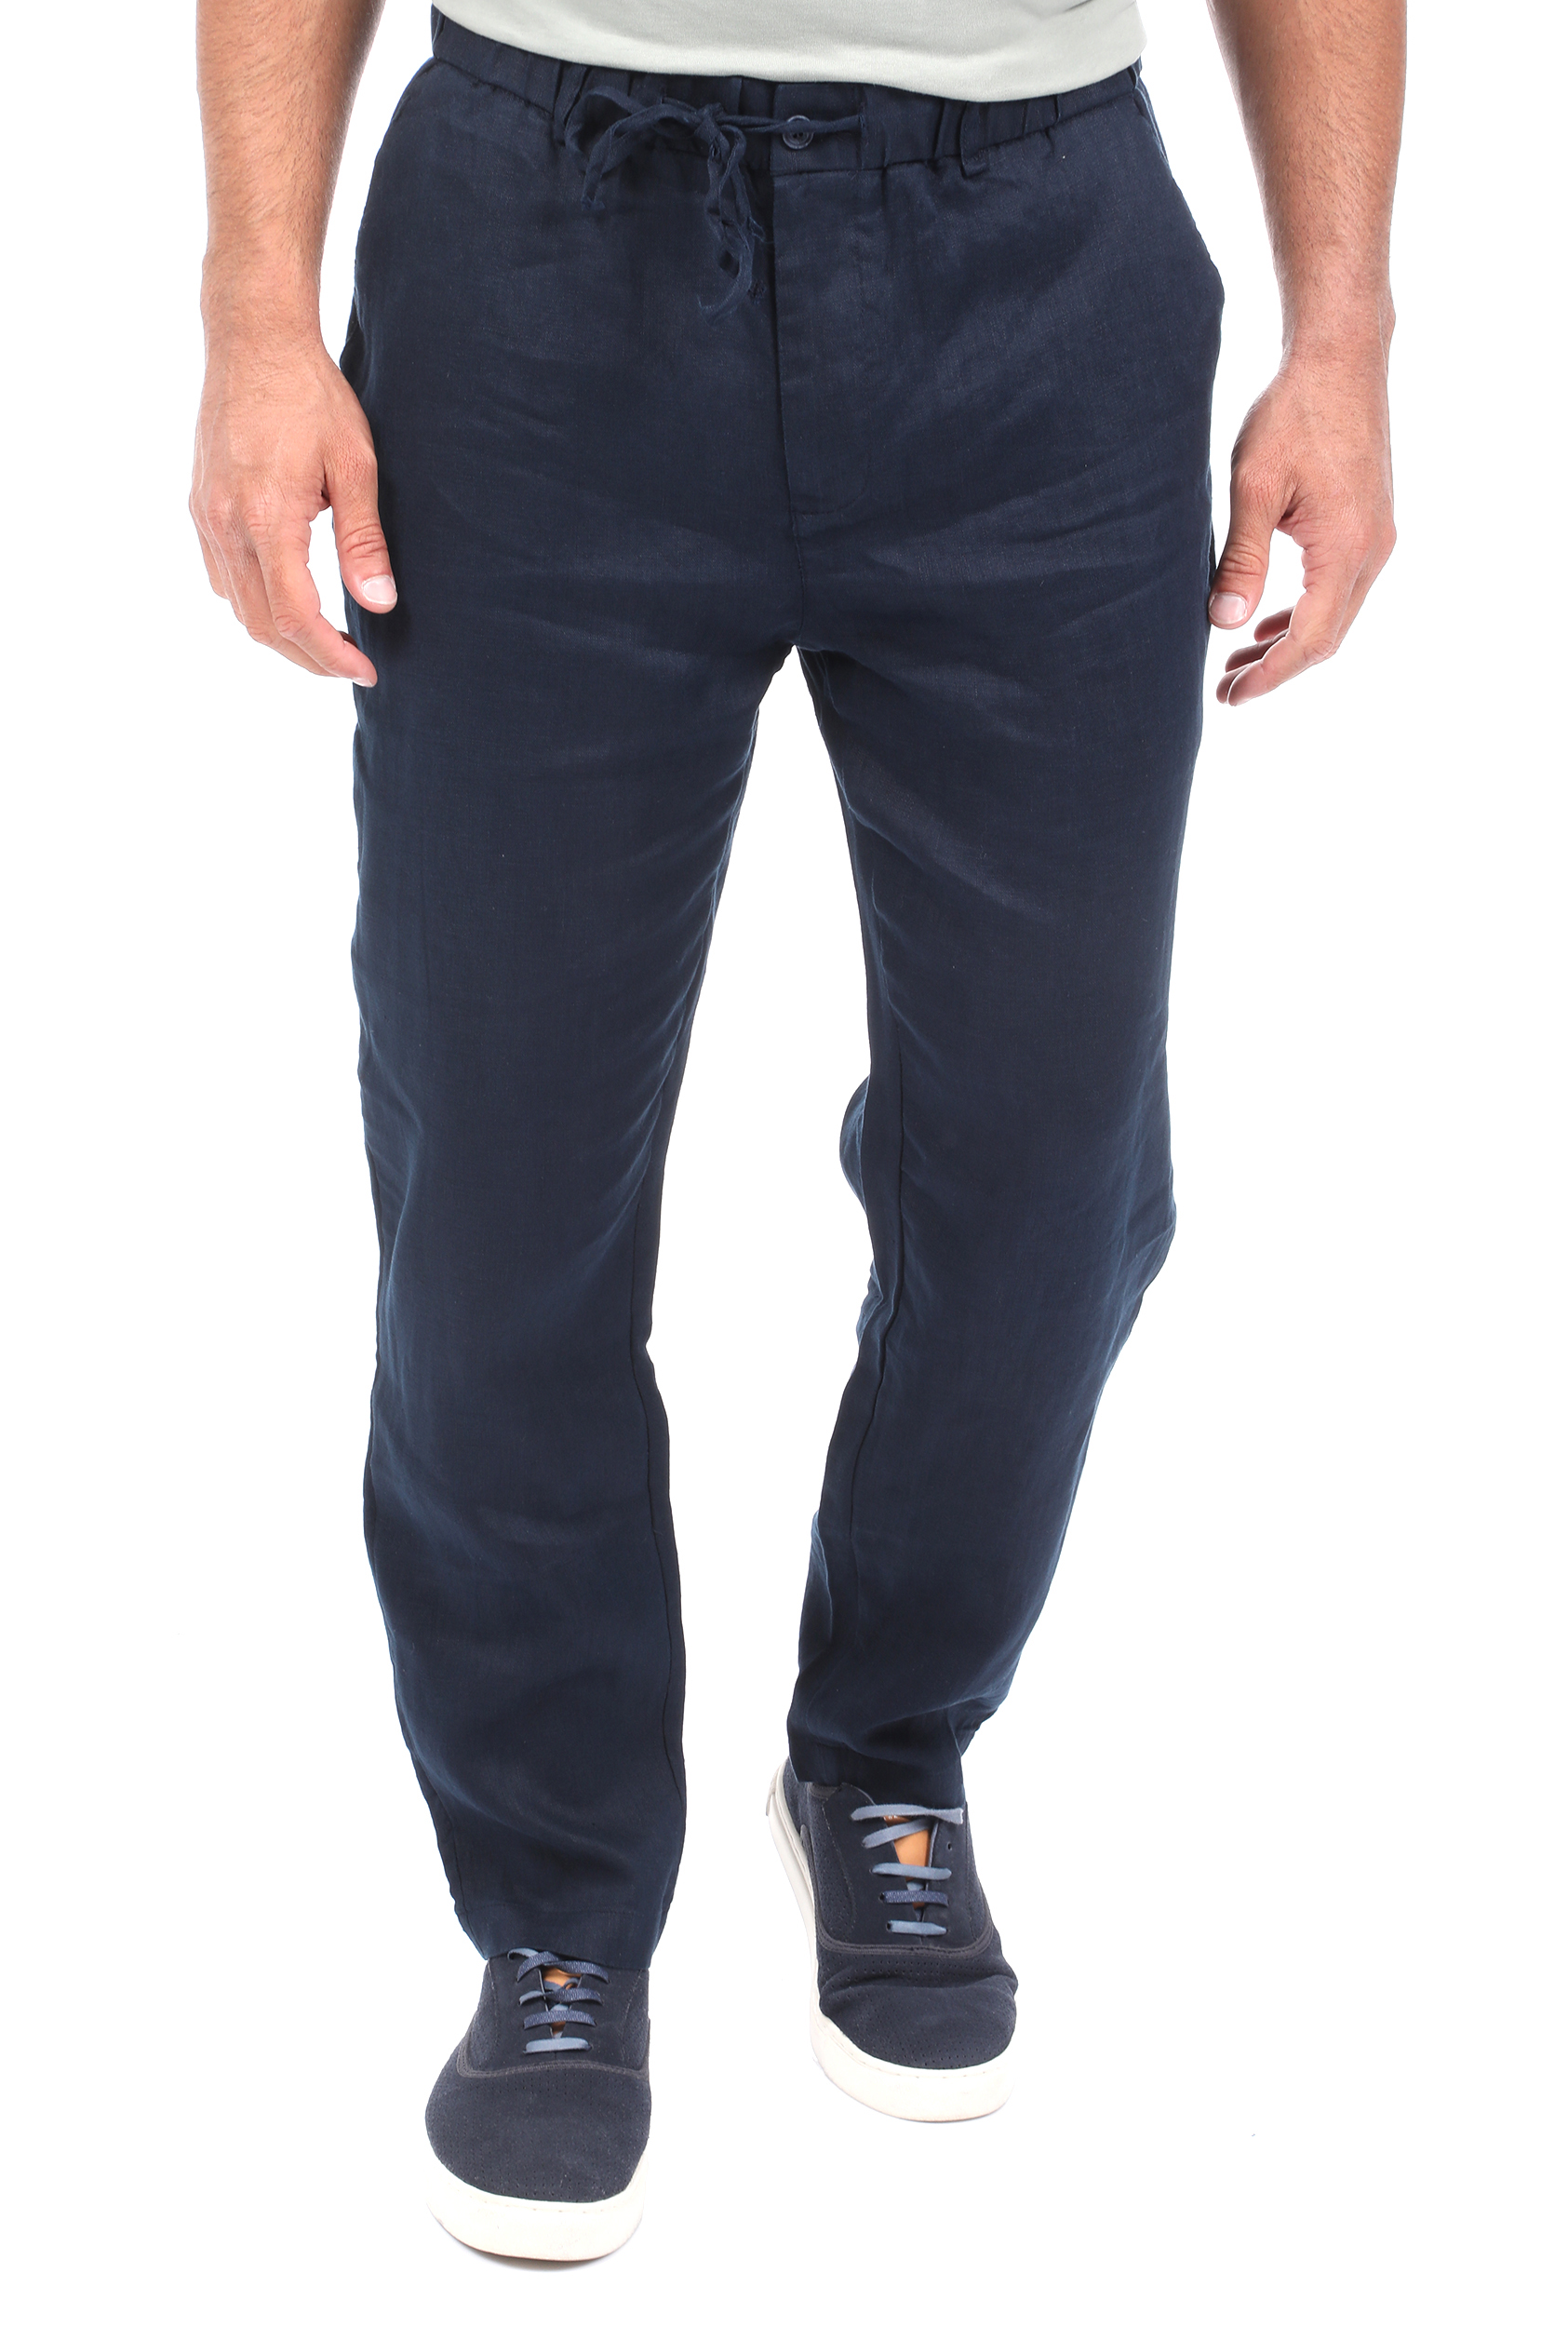 Ανδρικά/Ρούχα/Παντελόνια/Ισια Γραμμή SSEINSE - Ανδρικό λινό παντελόνι SSEINSE μπλε